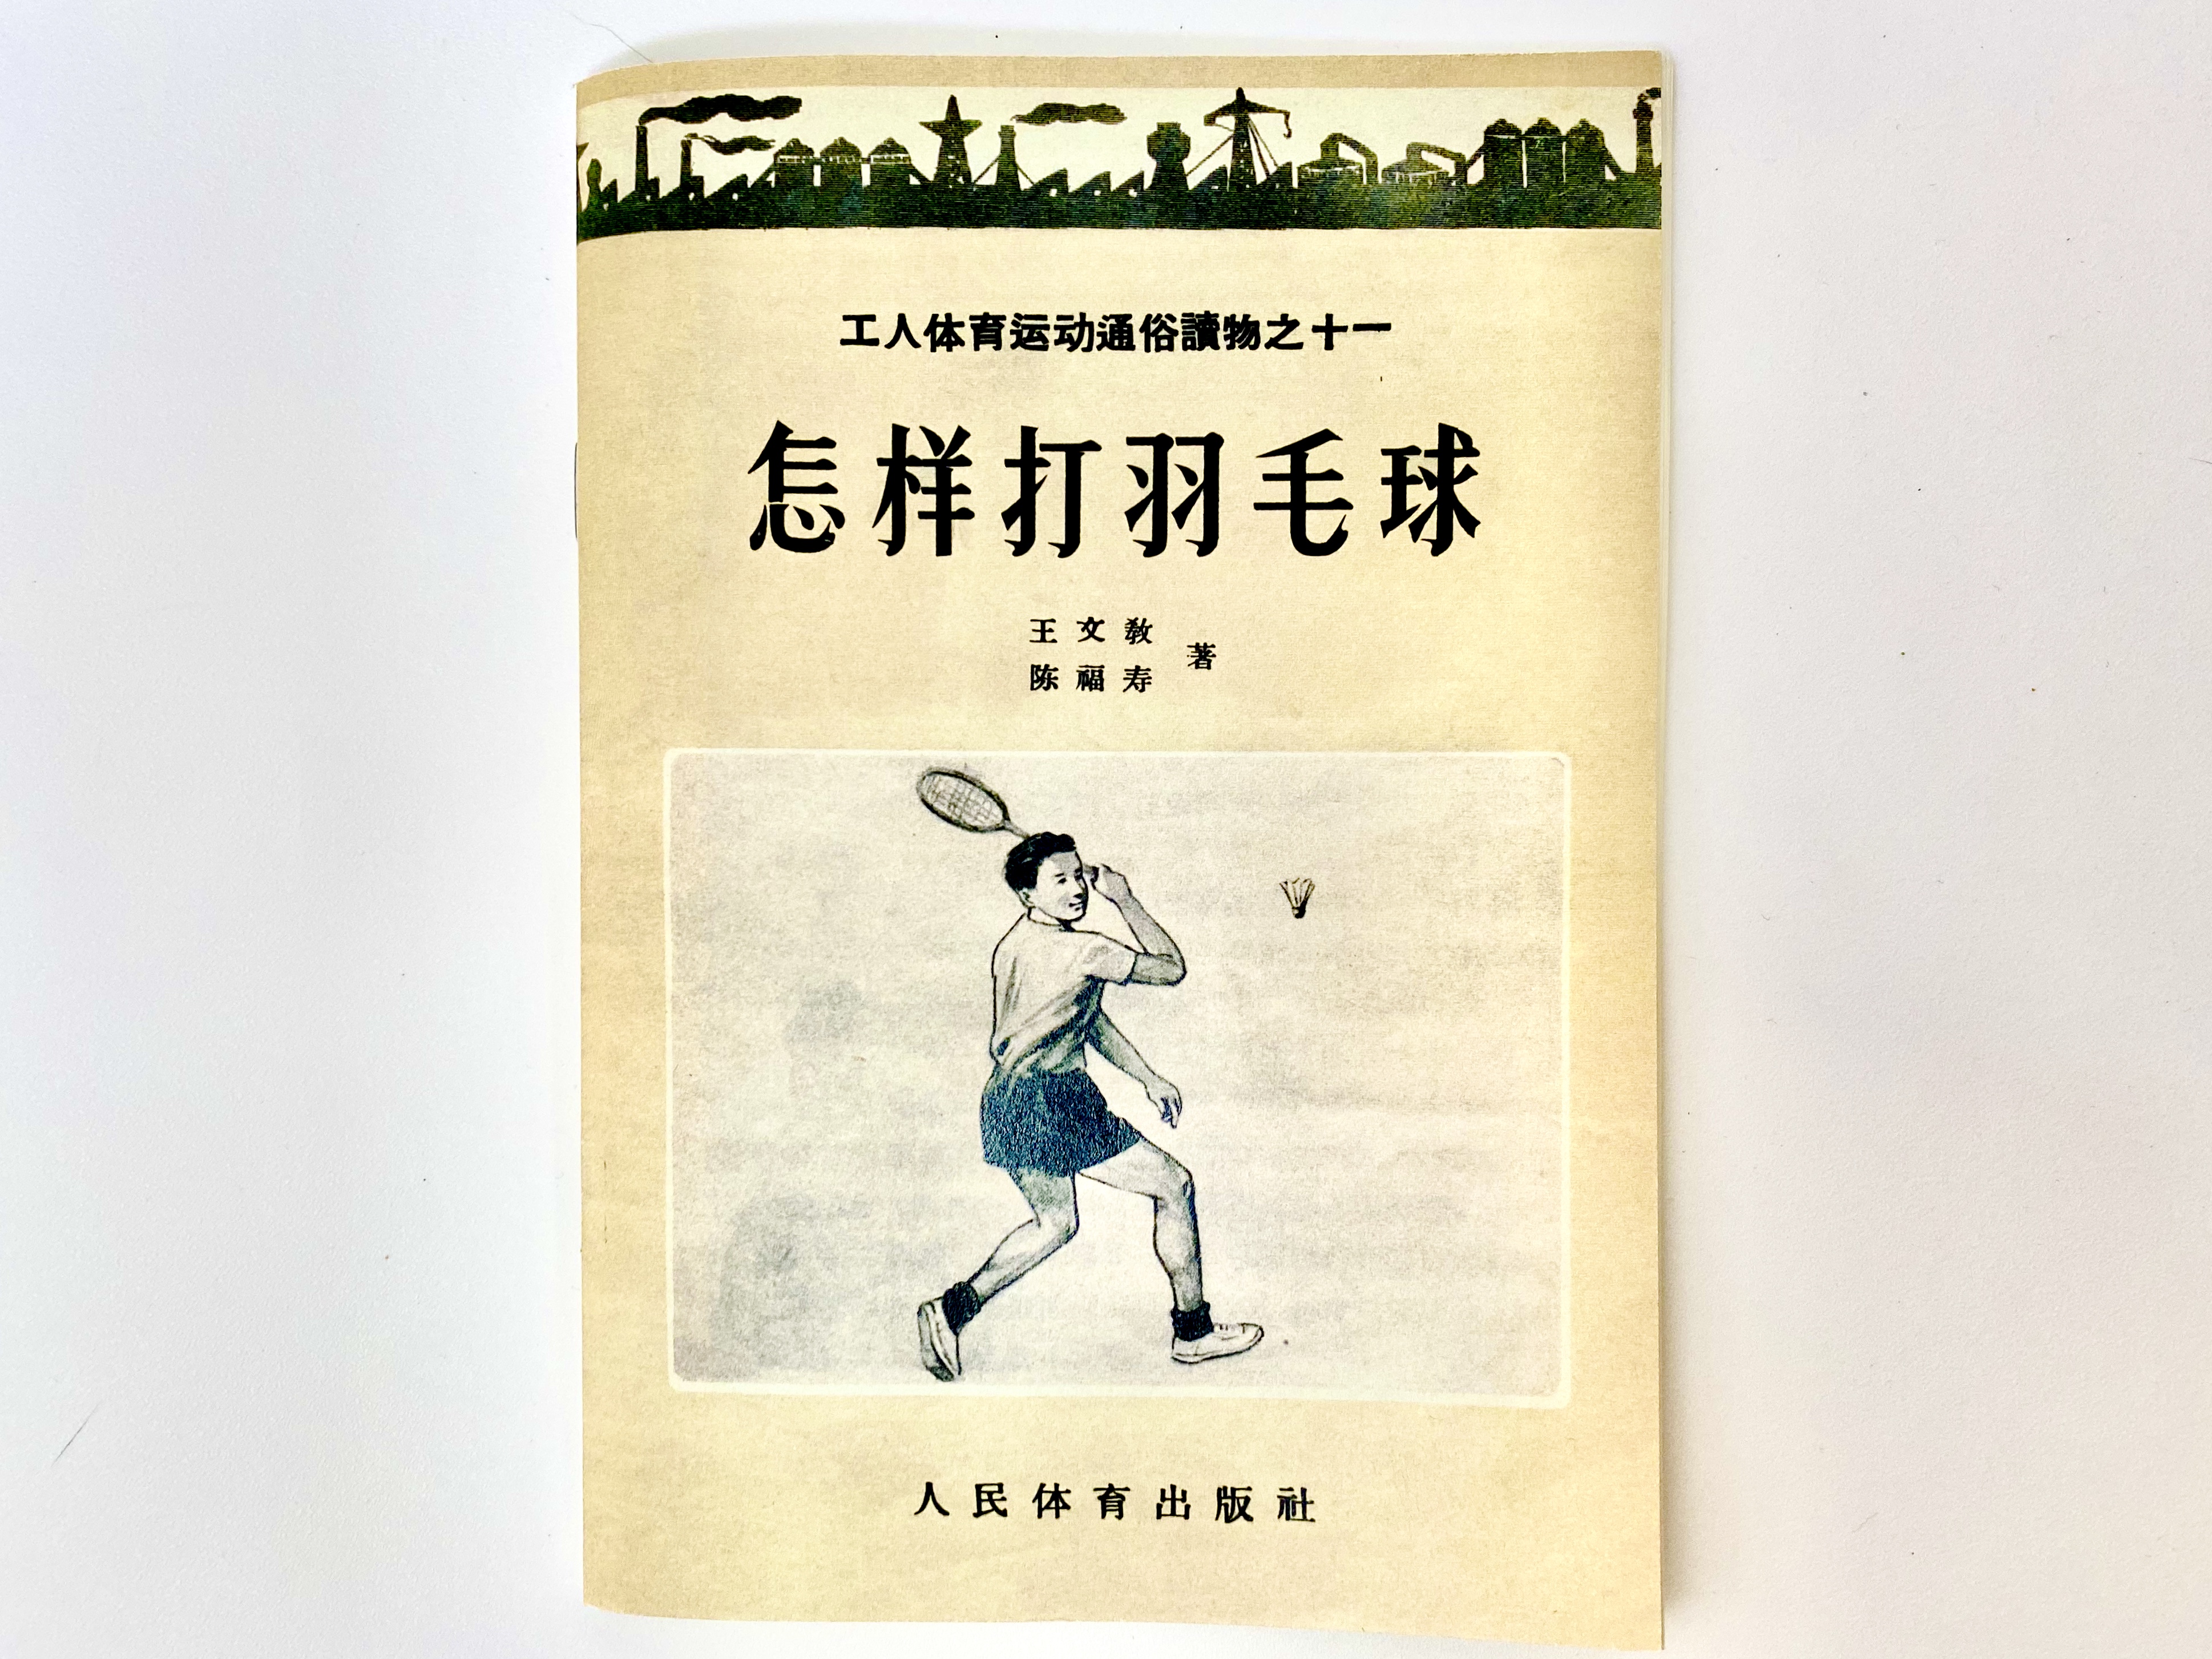 王文教和陈福寿合写的《羽毛球》教材。